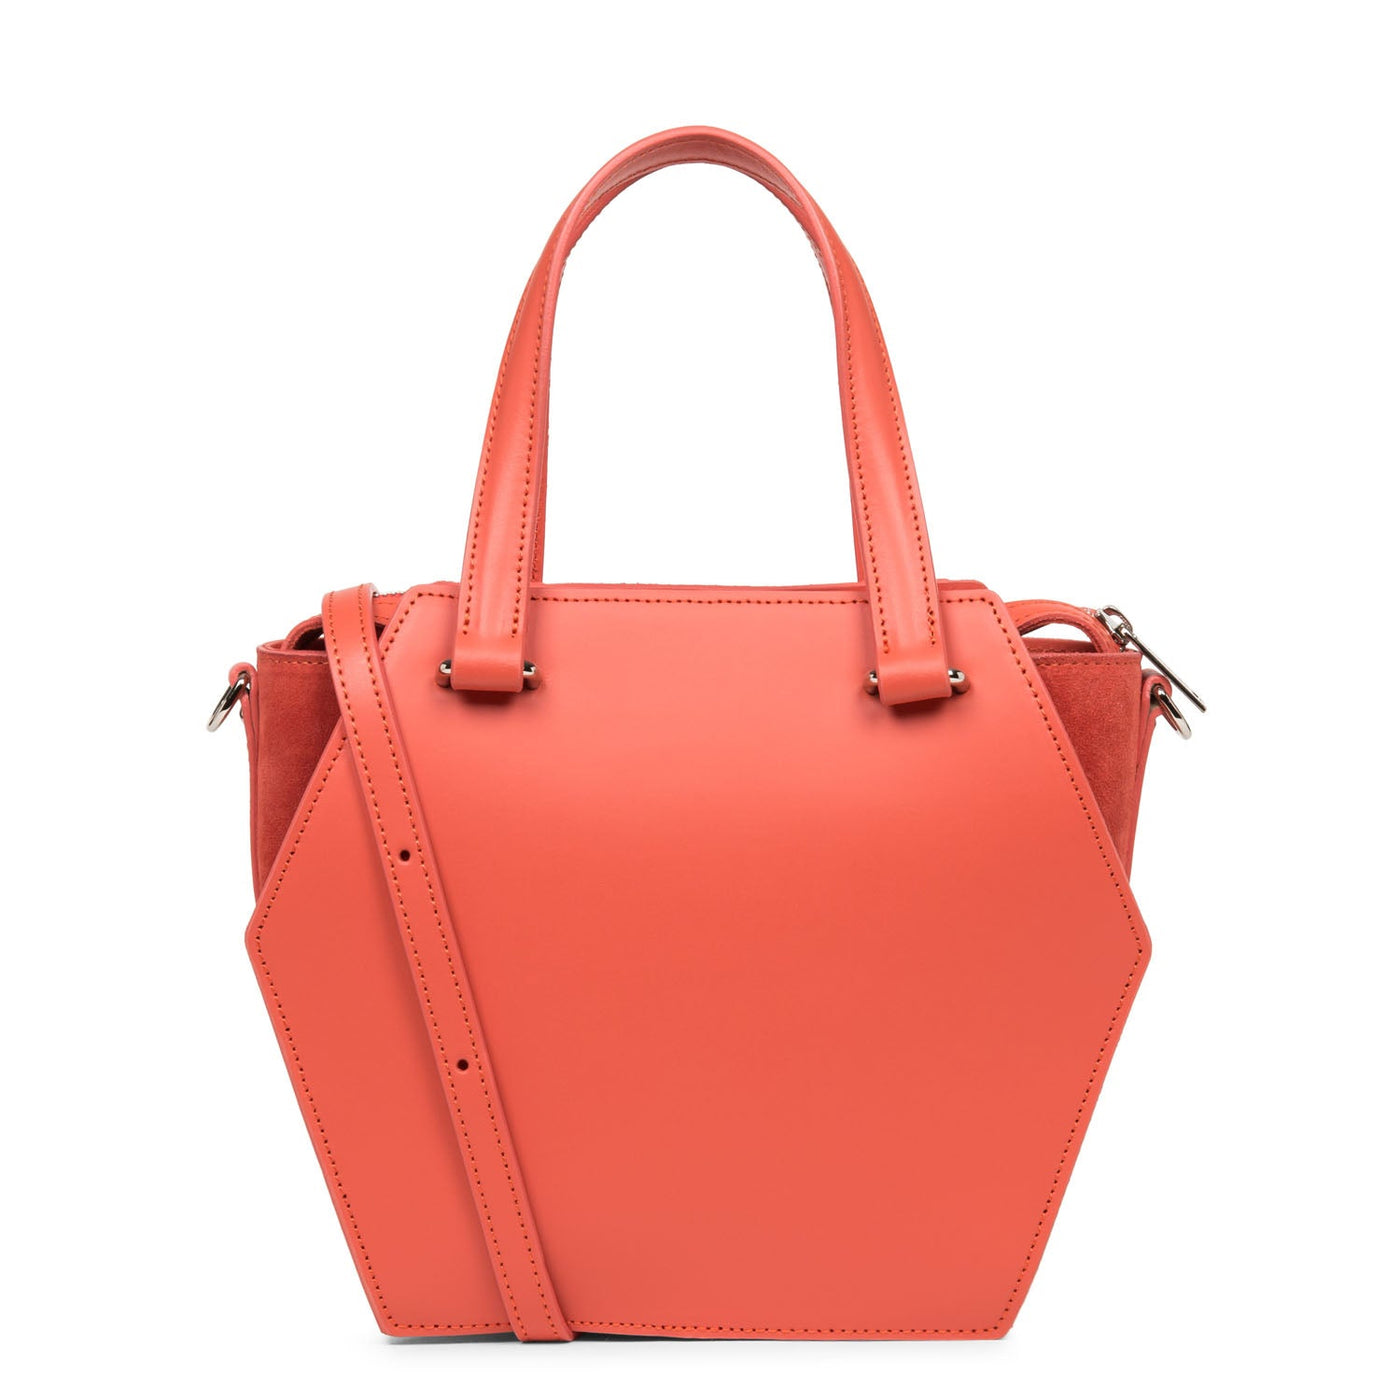 m handbag - smooth ruche #couleur_corail